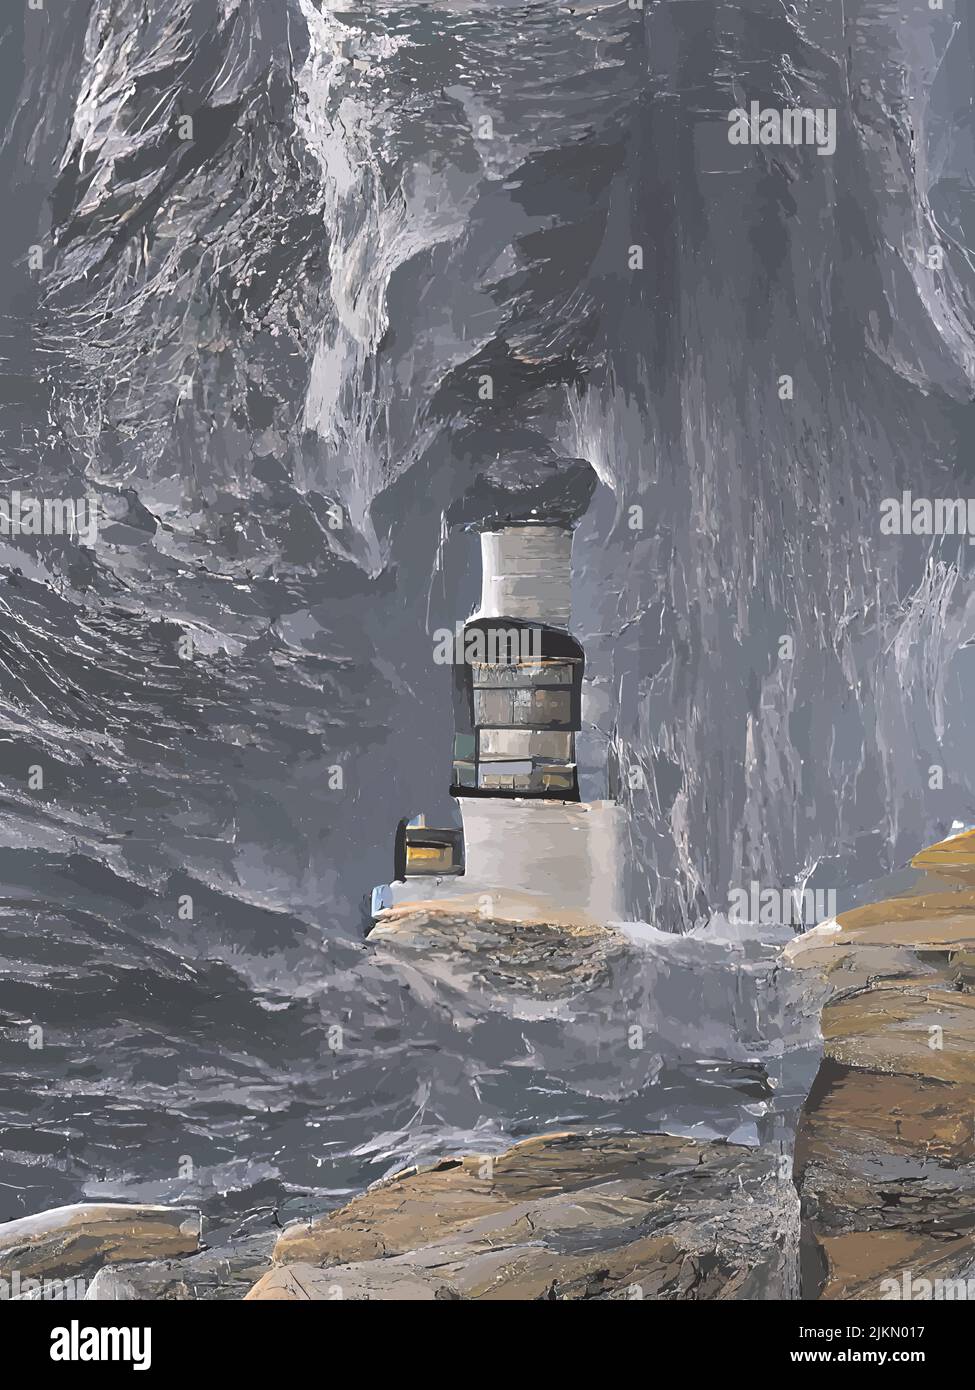 peinture numérique des phares dans la mer Illustration de Vecteur